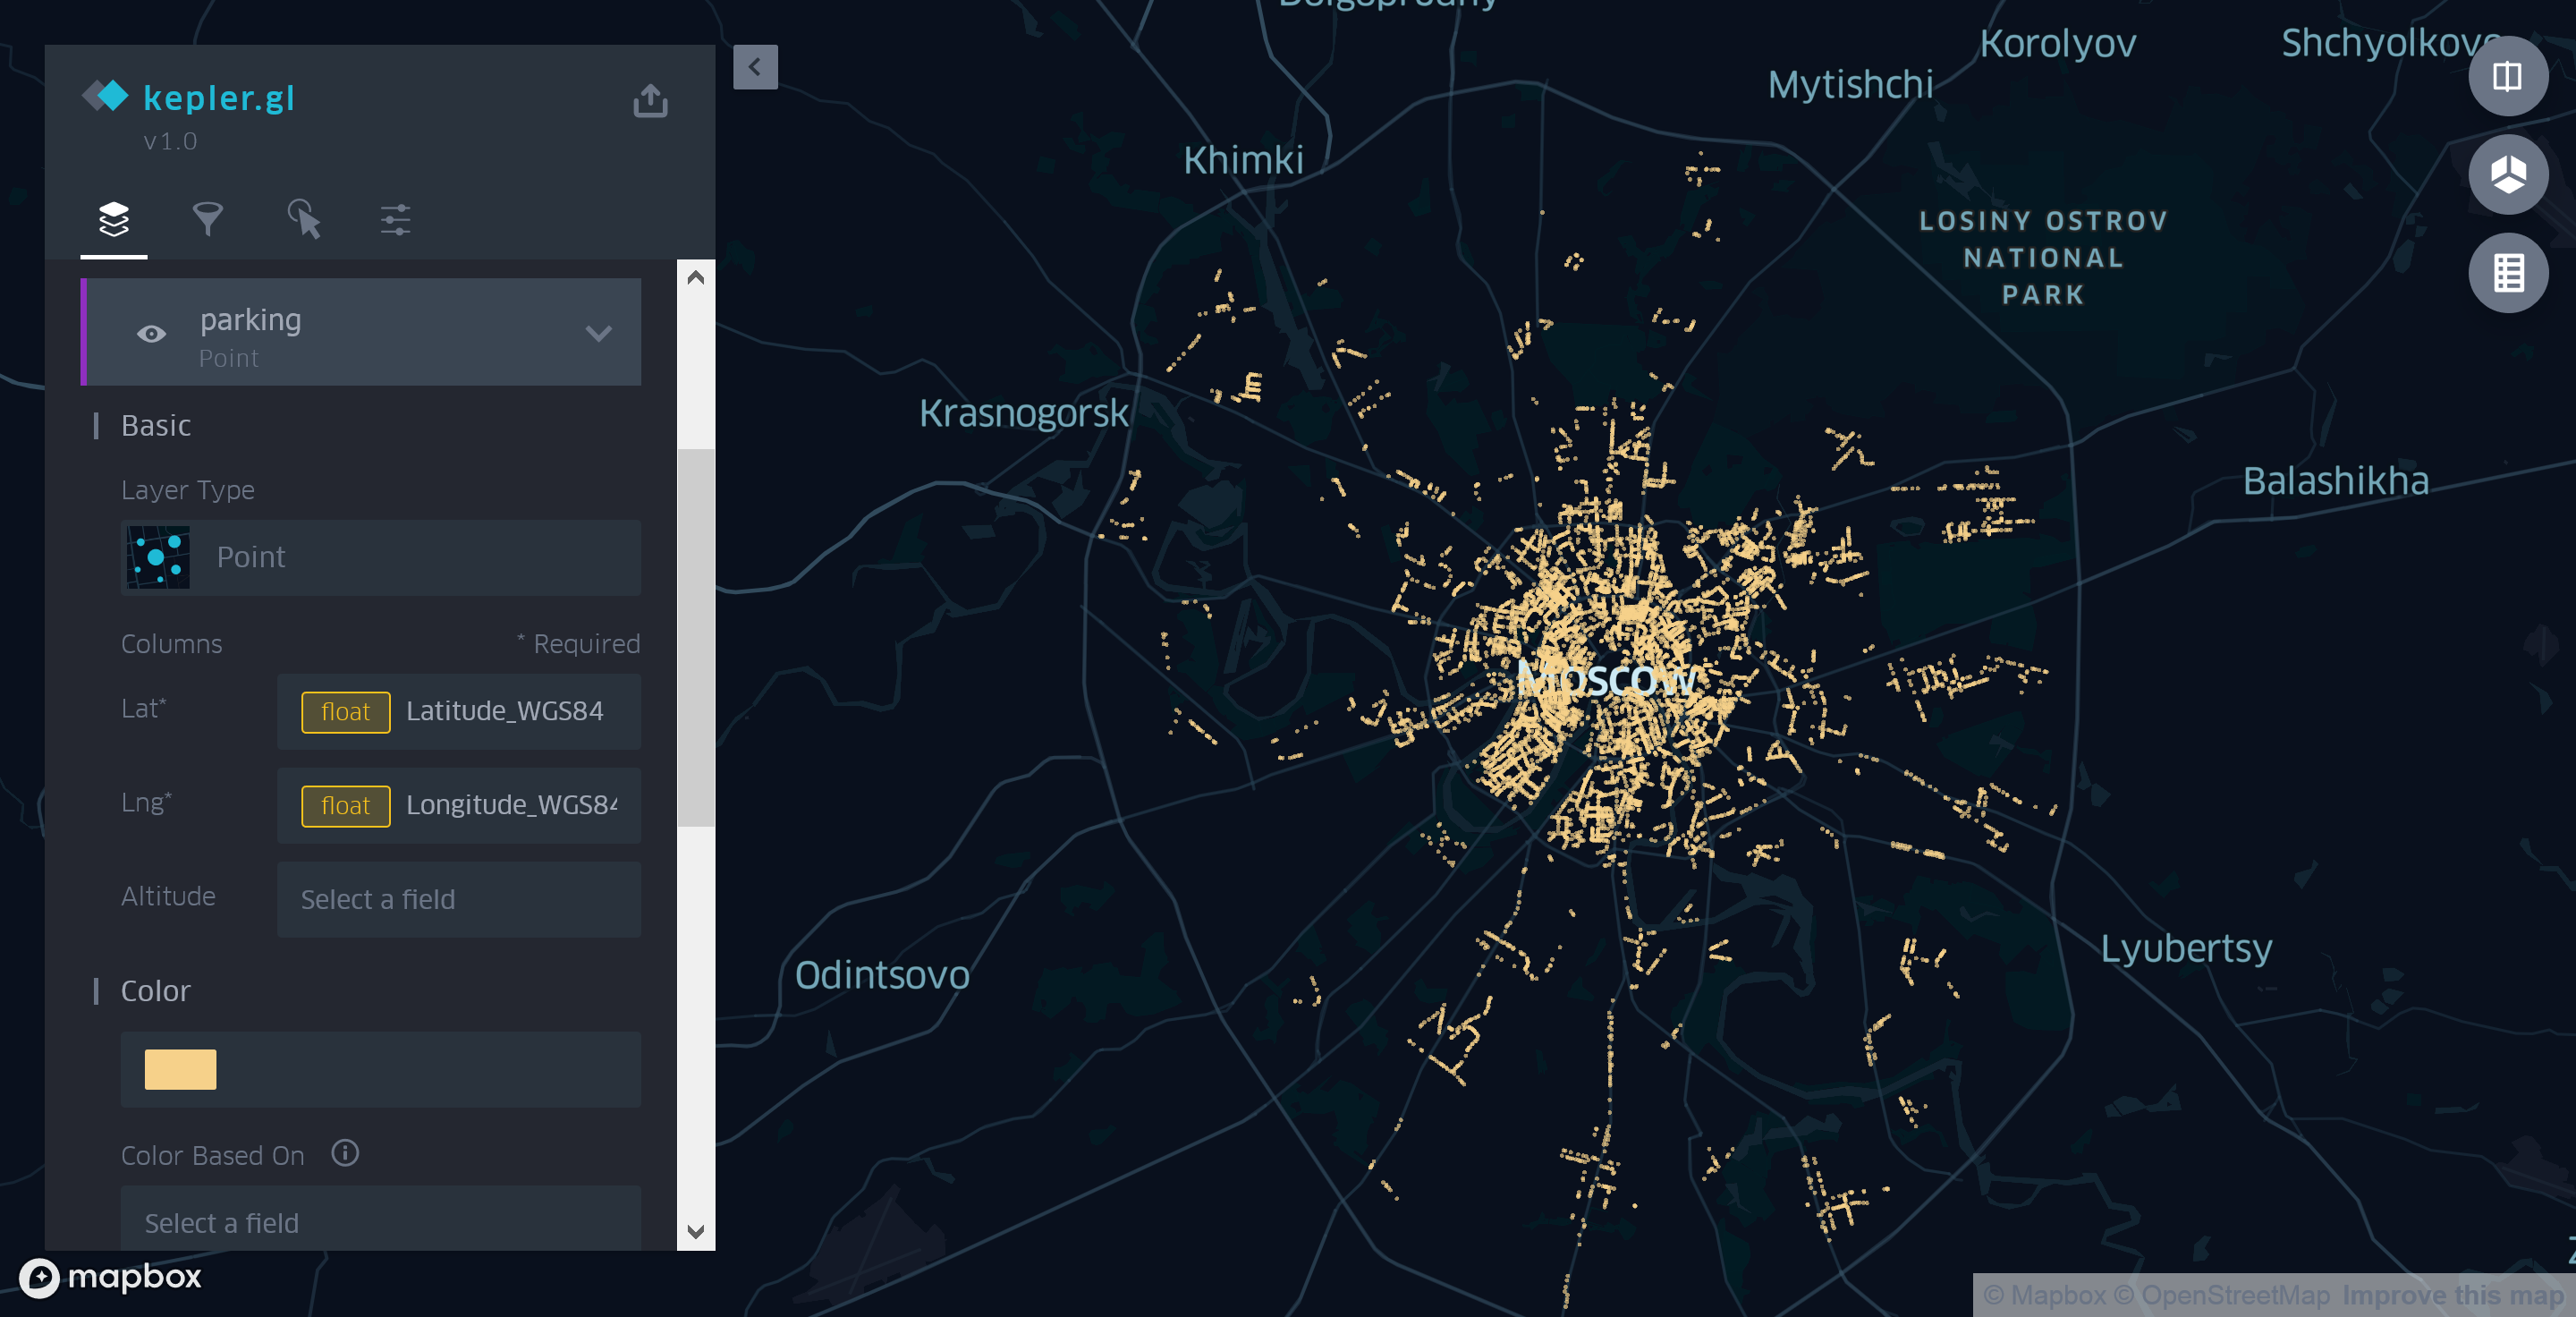 Как создать карту московских парковок с помощью Kepler.gl - 4